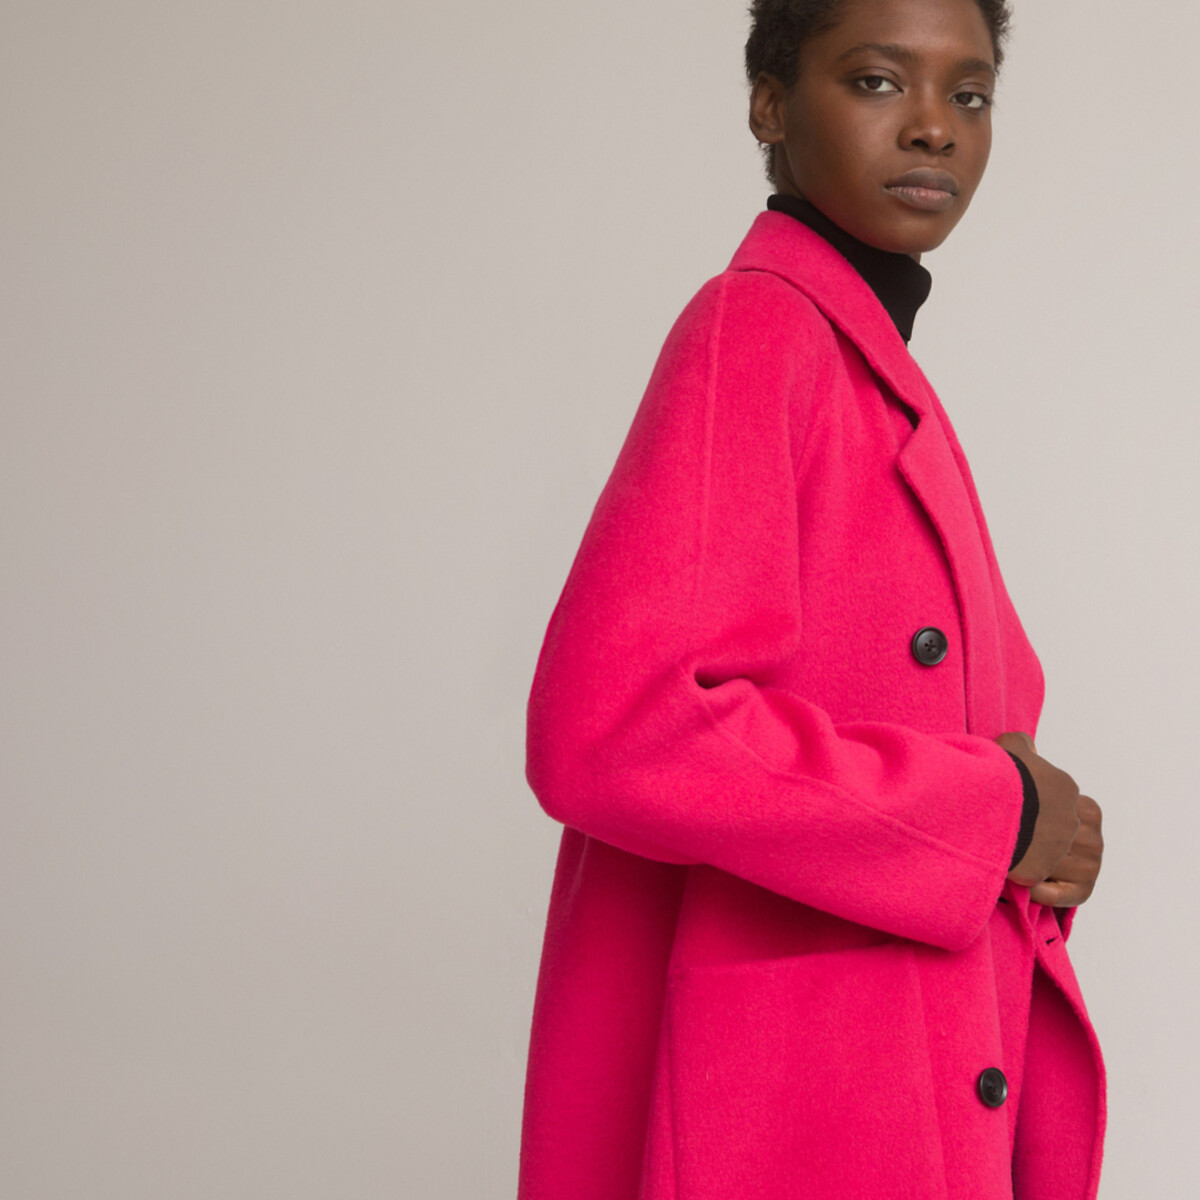 Пальто Из шерстяного драпа 34 (FR) - 40 (RUS) розовый LaRedoute, размер 34 (FR) - 40 (RUS) Пальто Из шерстяного драпа 34 (FR) - 40 (RUS) розовый - фото 1